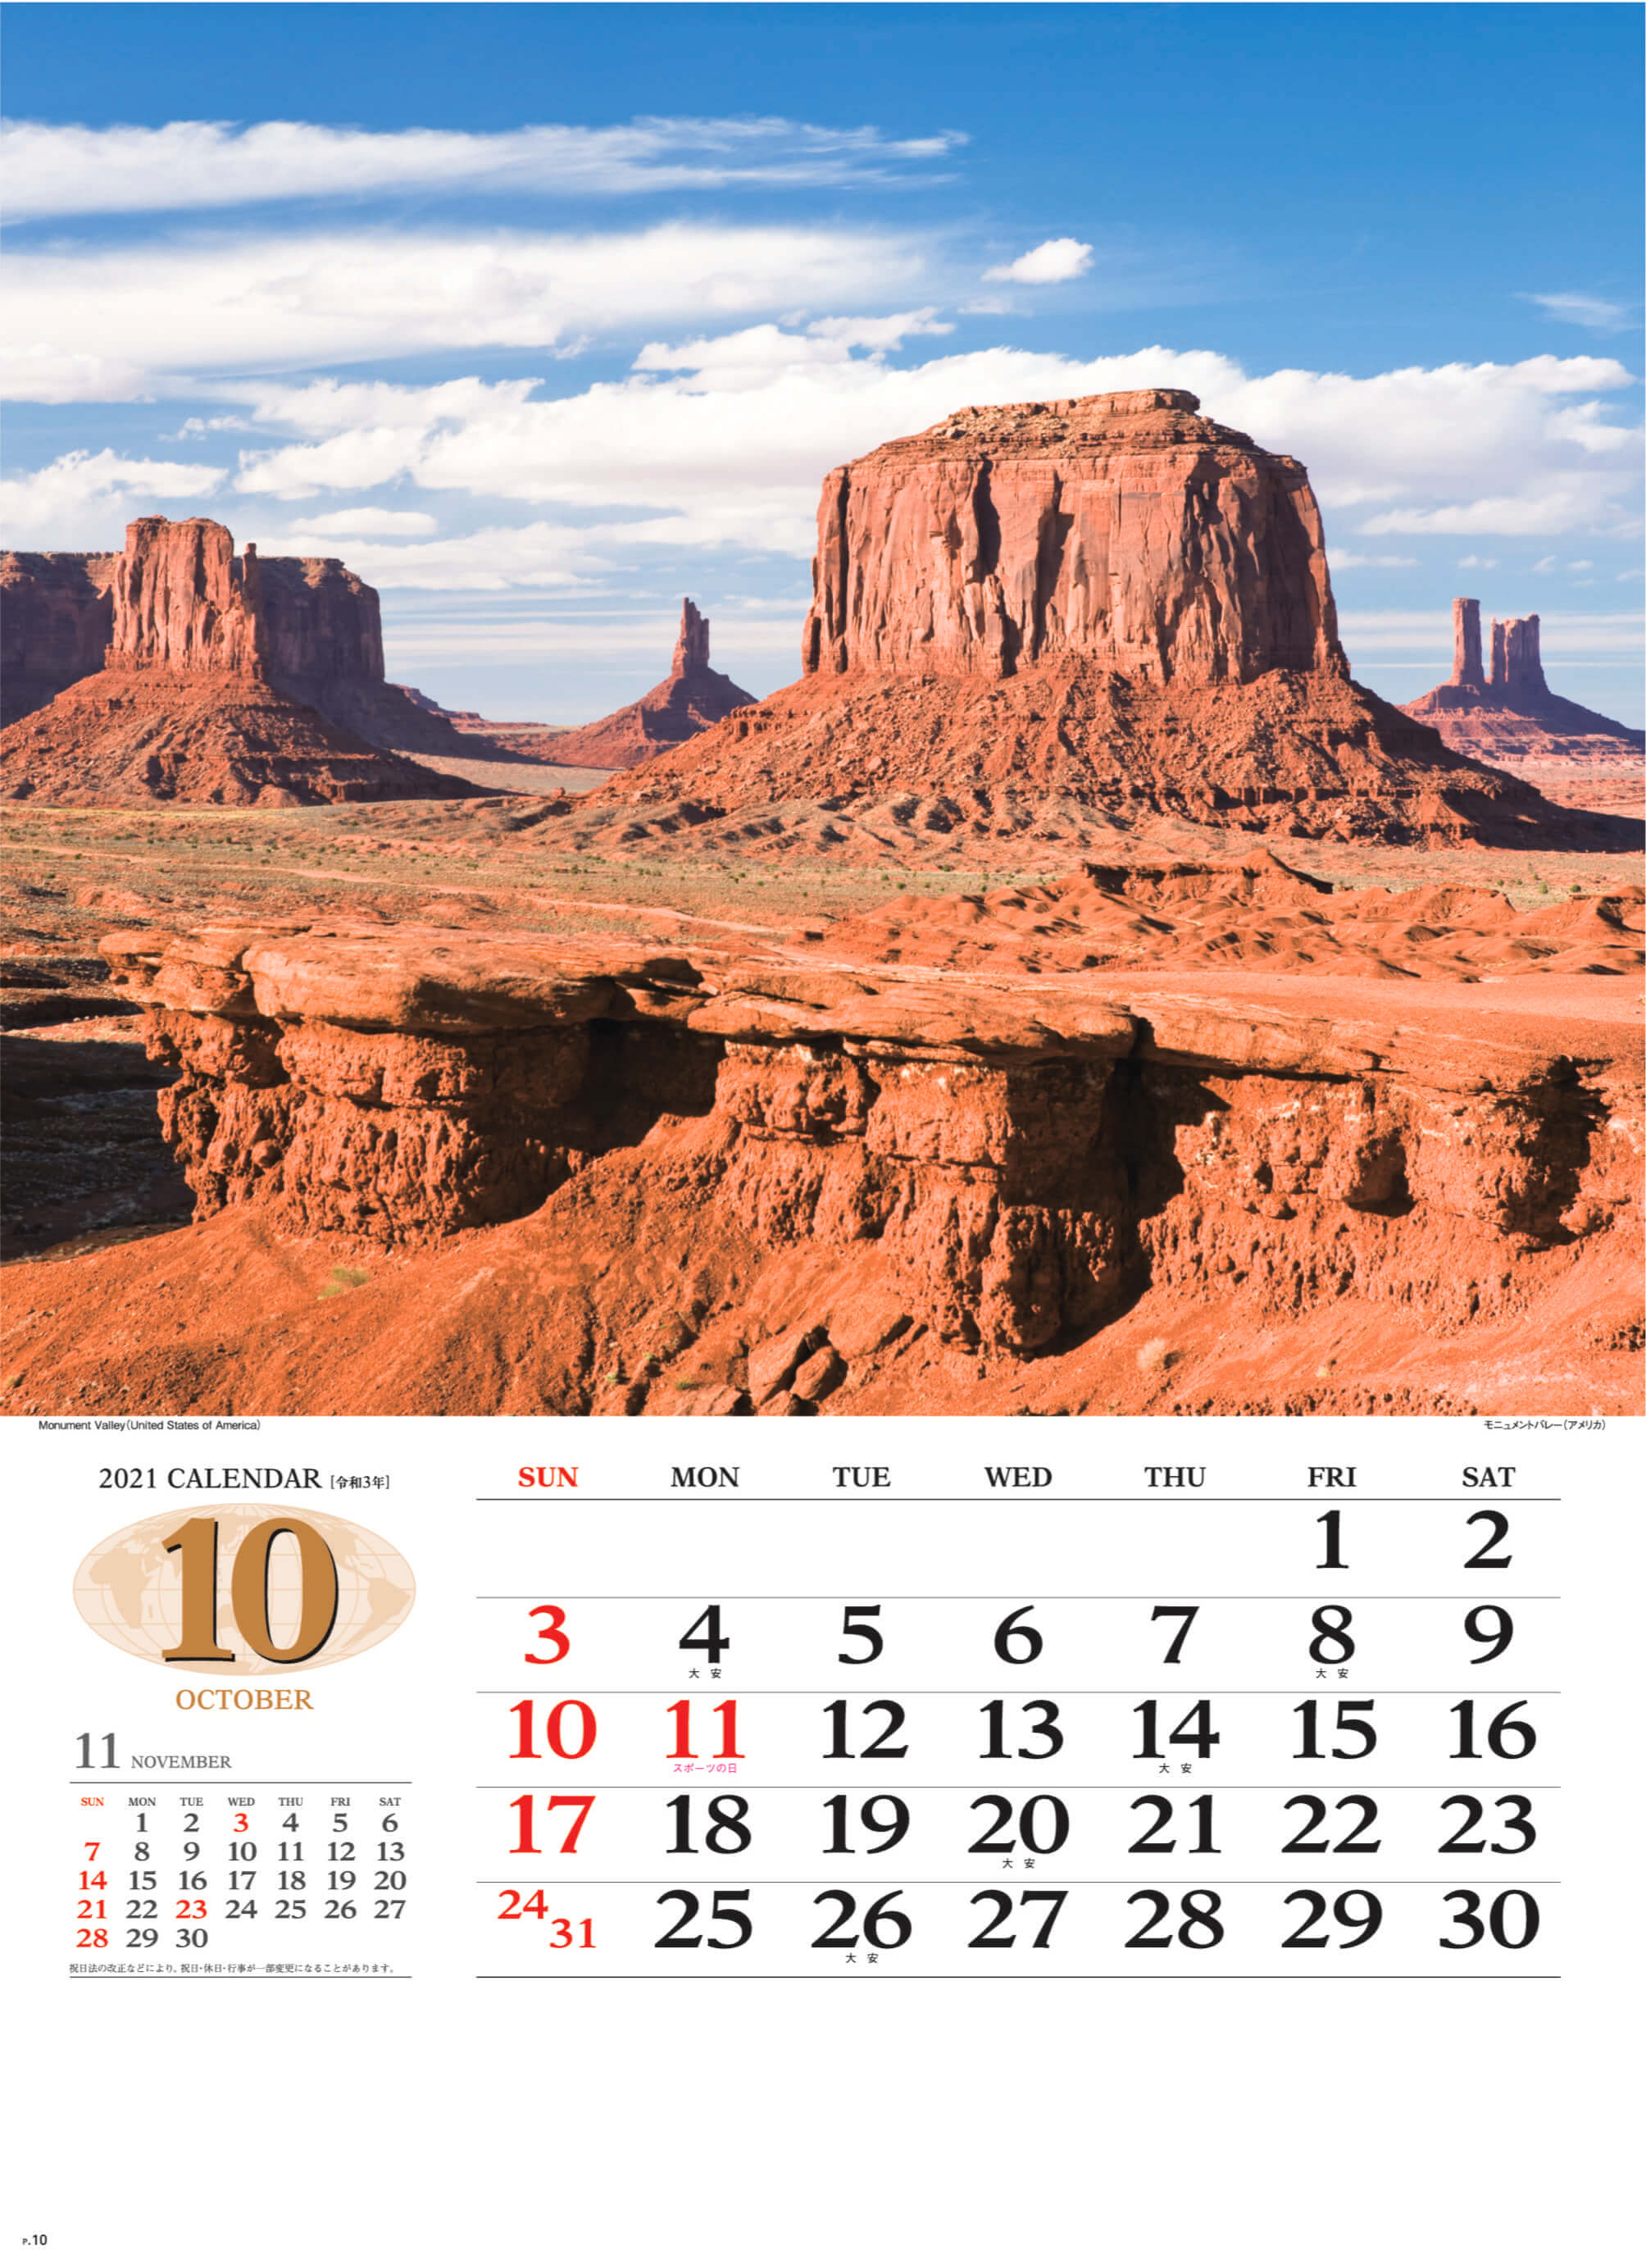 Sg 472 世界の景観 21年カレンダー カレンダーの通販サイト E カレンダー Com 1部からでも送料無料でお届け